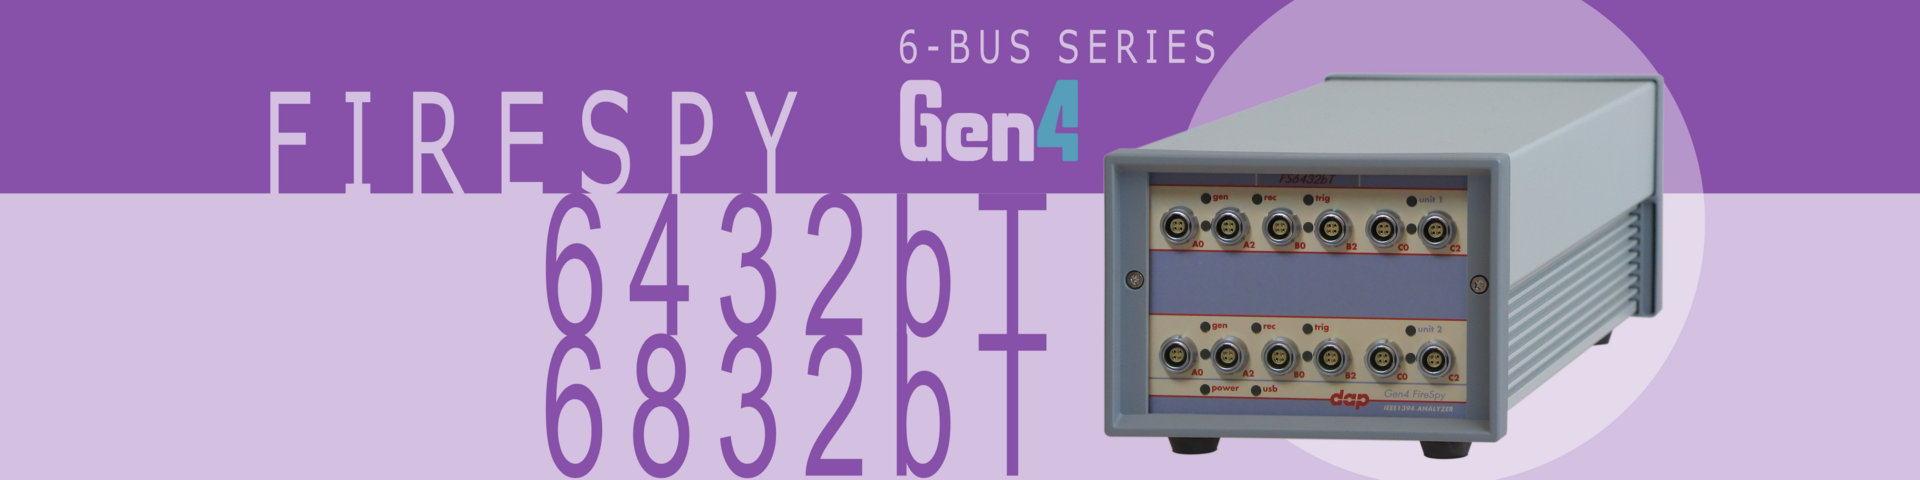 1394 and AS5643 Bus Analyzer - FireSpy6432b(T)/6832b(T)